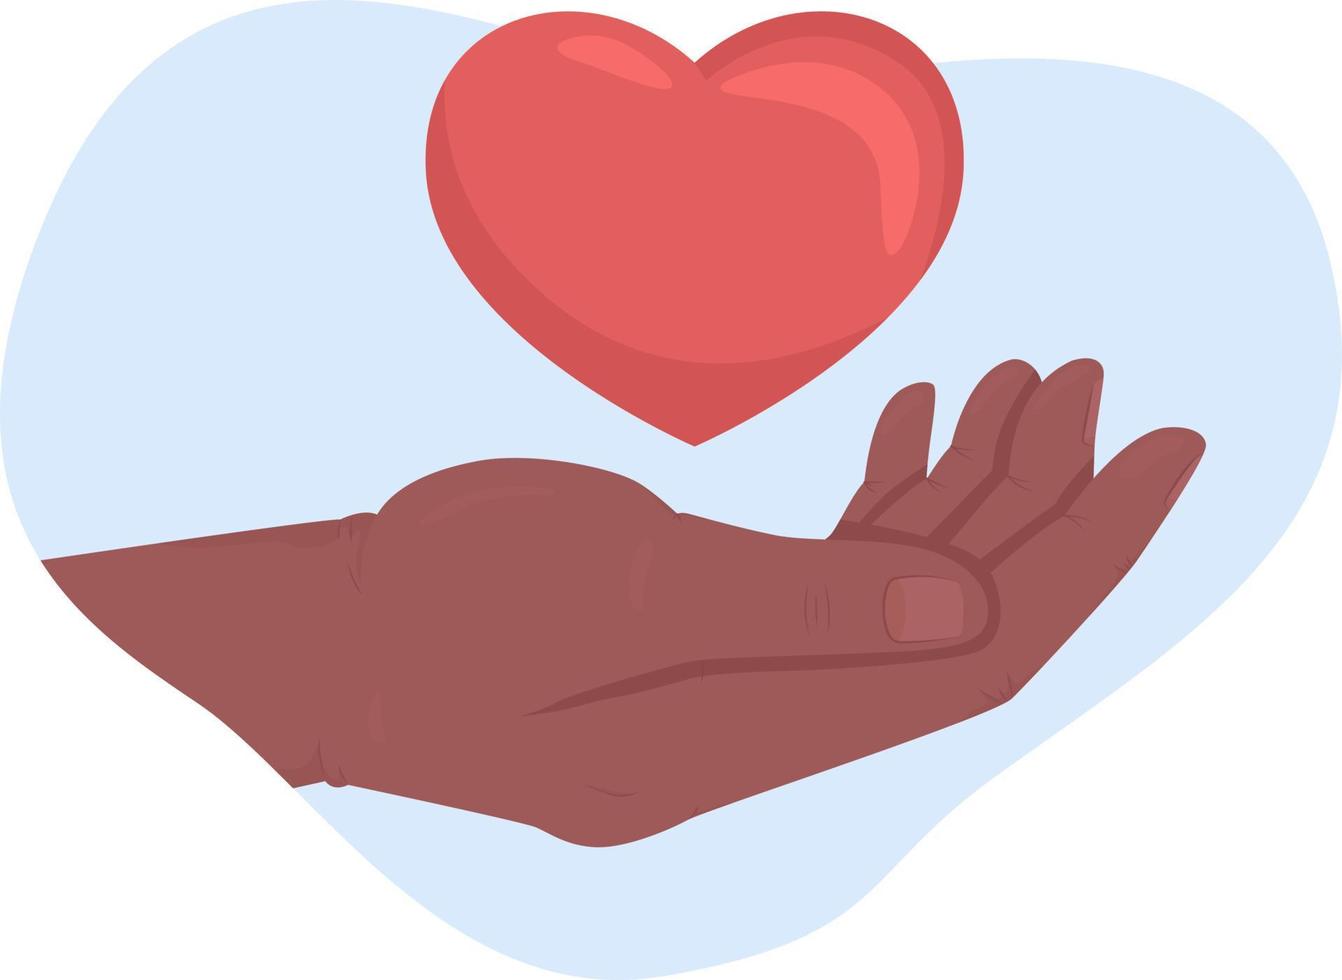 humanitäre hilfe 2d-vektor isolierte illustration. flache Handgeste der Palme und des Herzens auf Karikaturhintergrund. Freundlichkeit und Mitgefühl bunt editierbare Szene für Handy, Website, Präsentation vektor